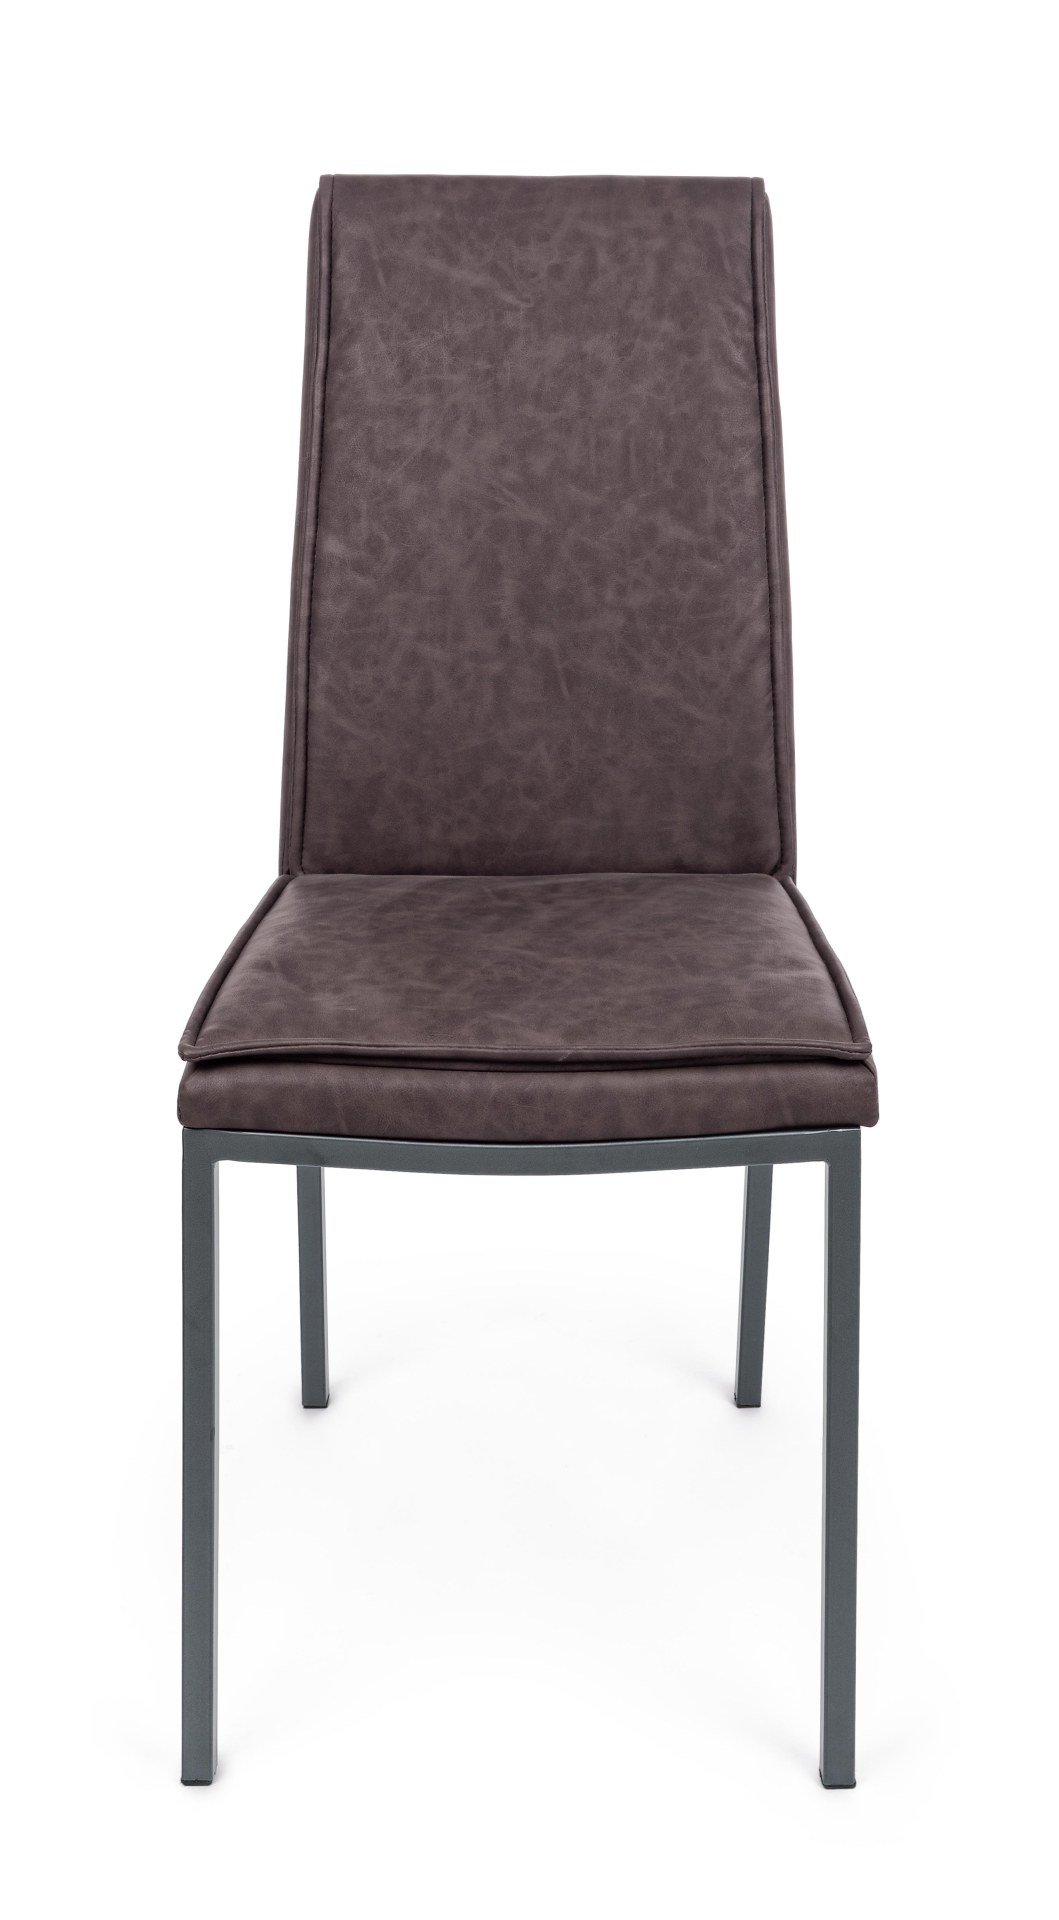 Der Esszimmerstuhl Sofie überzeugt mit seinem klassischen Design. Gefertigt wurde der Stuhl aus Kunstleder, welches einen braunen Farbton hat. Das Gestell ist aus Metall und ist Schwarz. Die Sitzhöhe beträgt 49 cm.